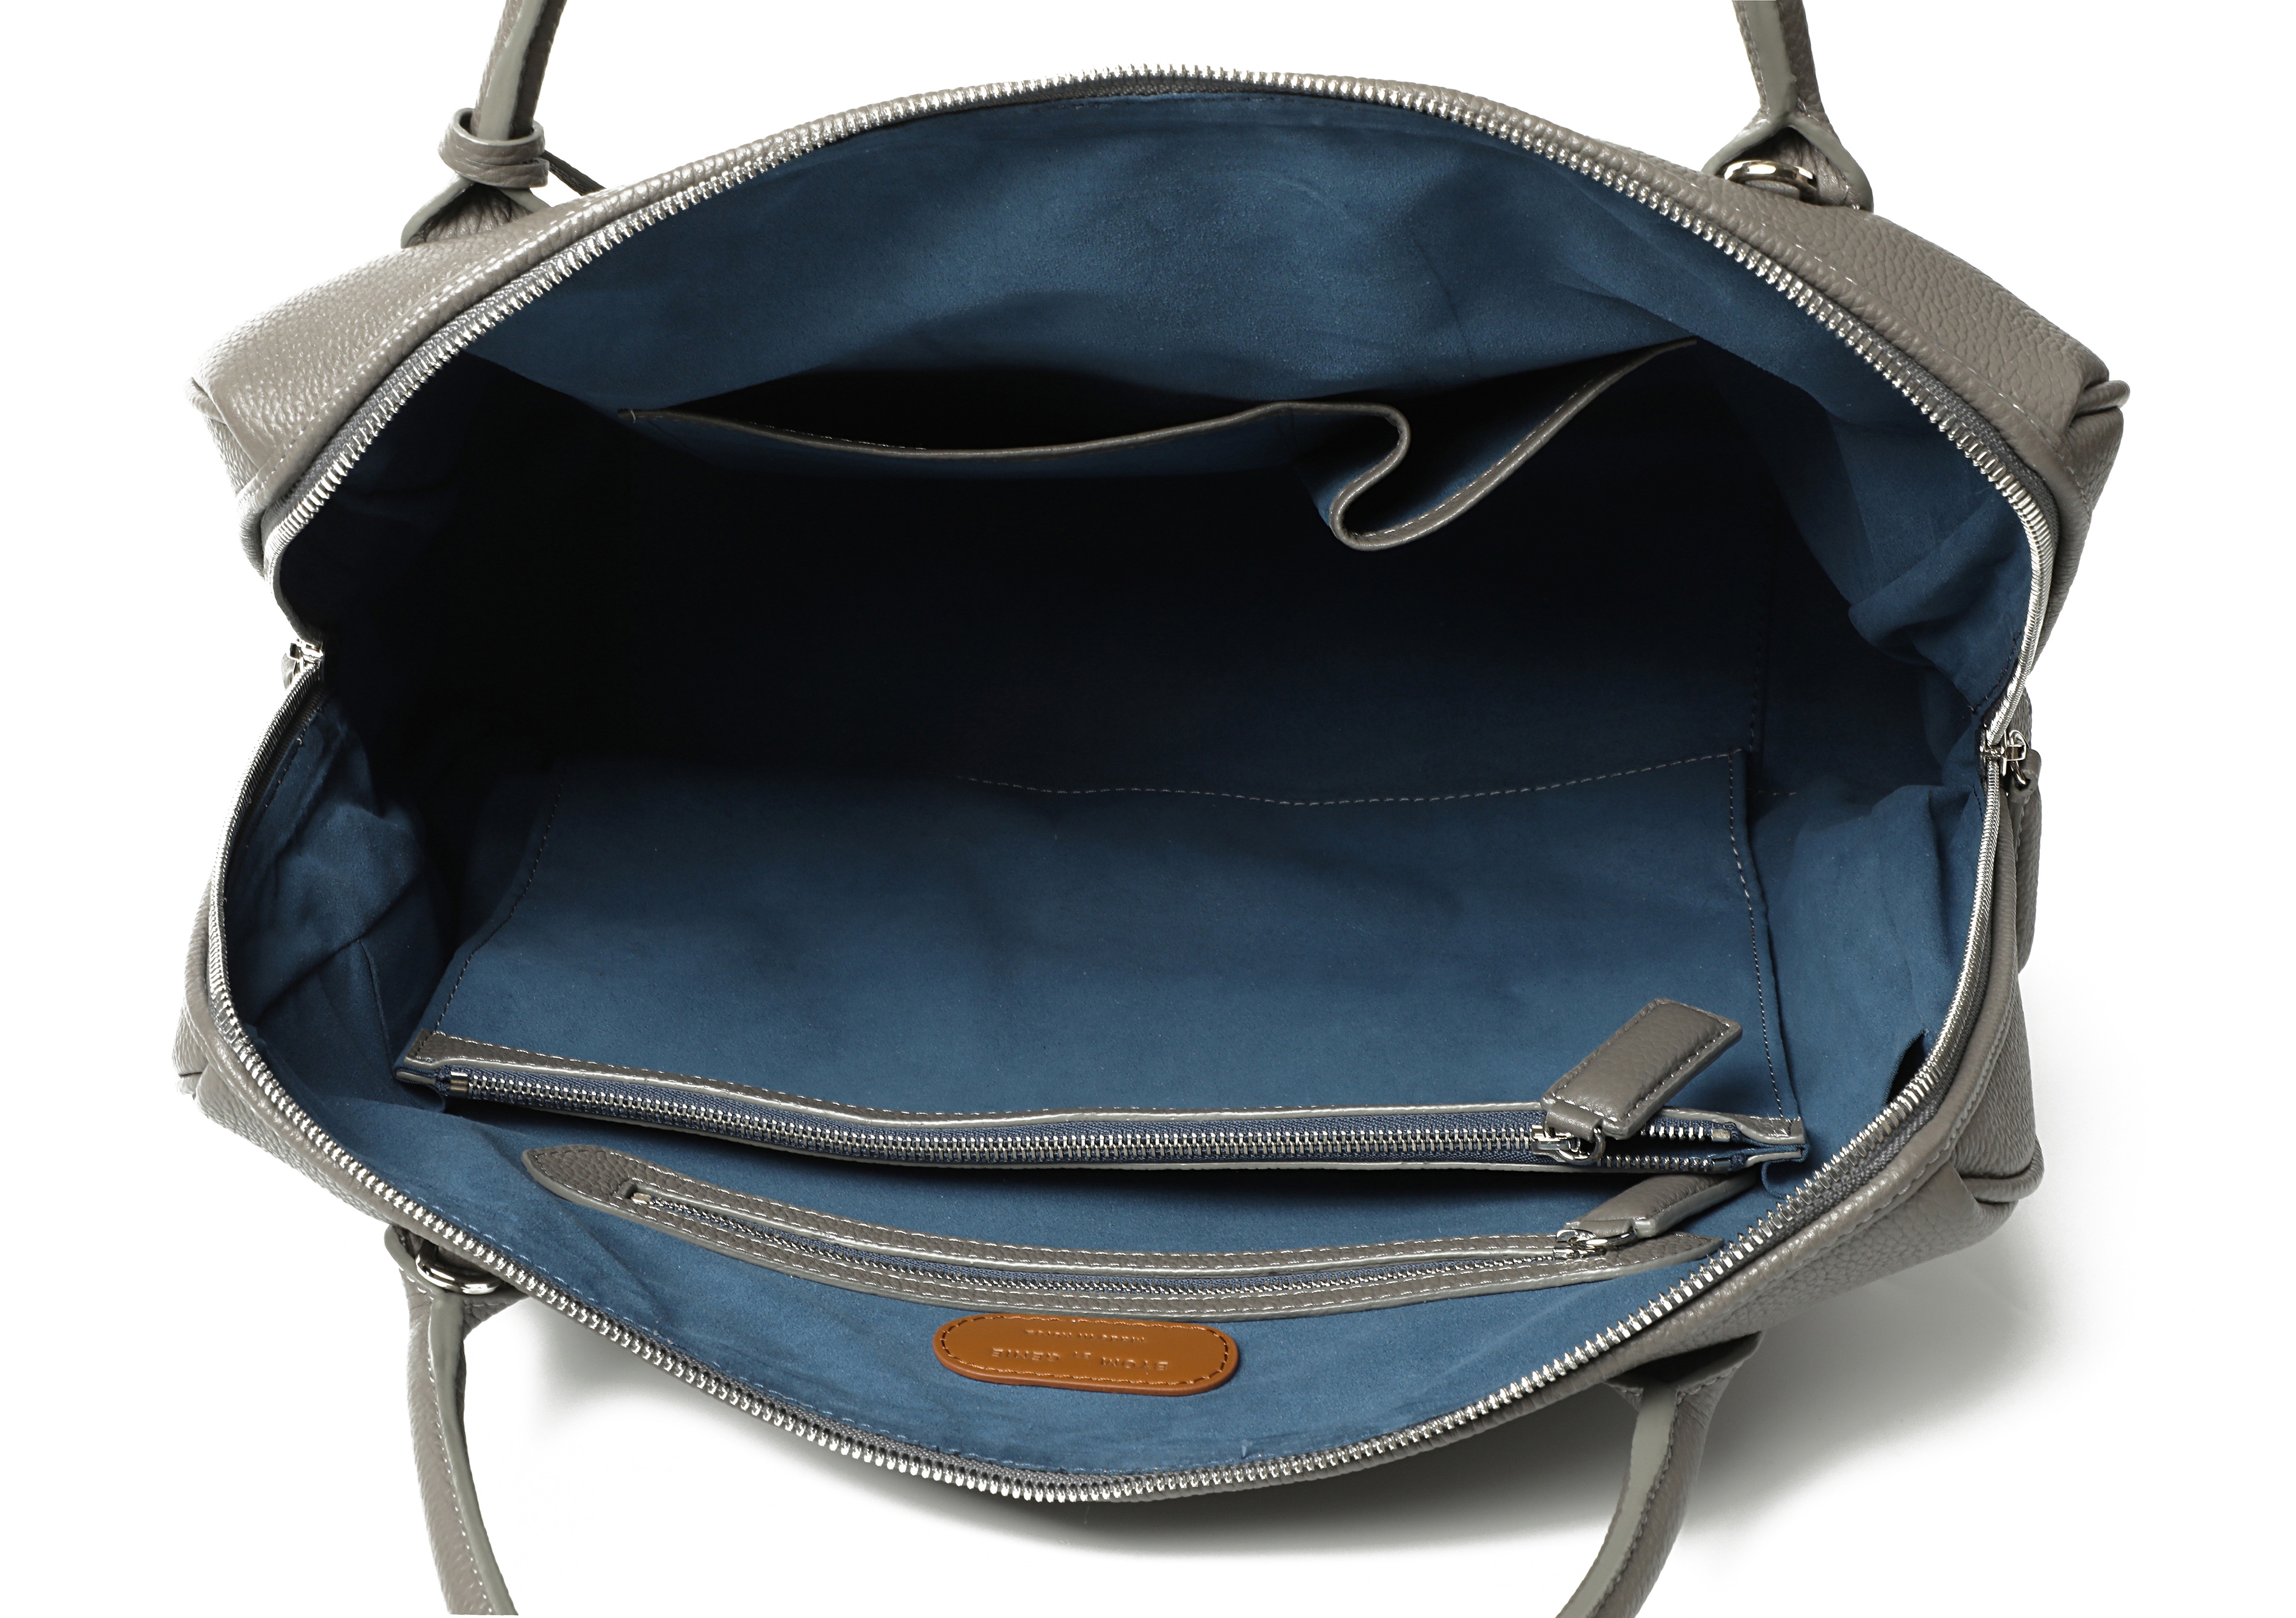 Gramercy men's bag _ Gray